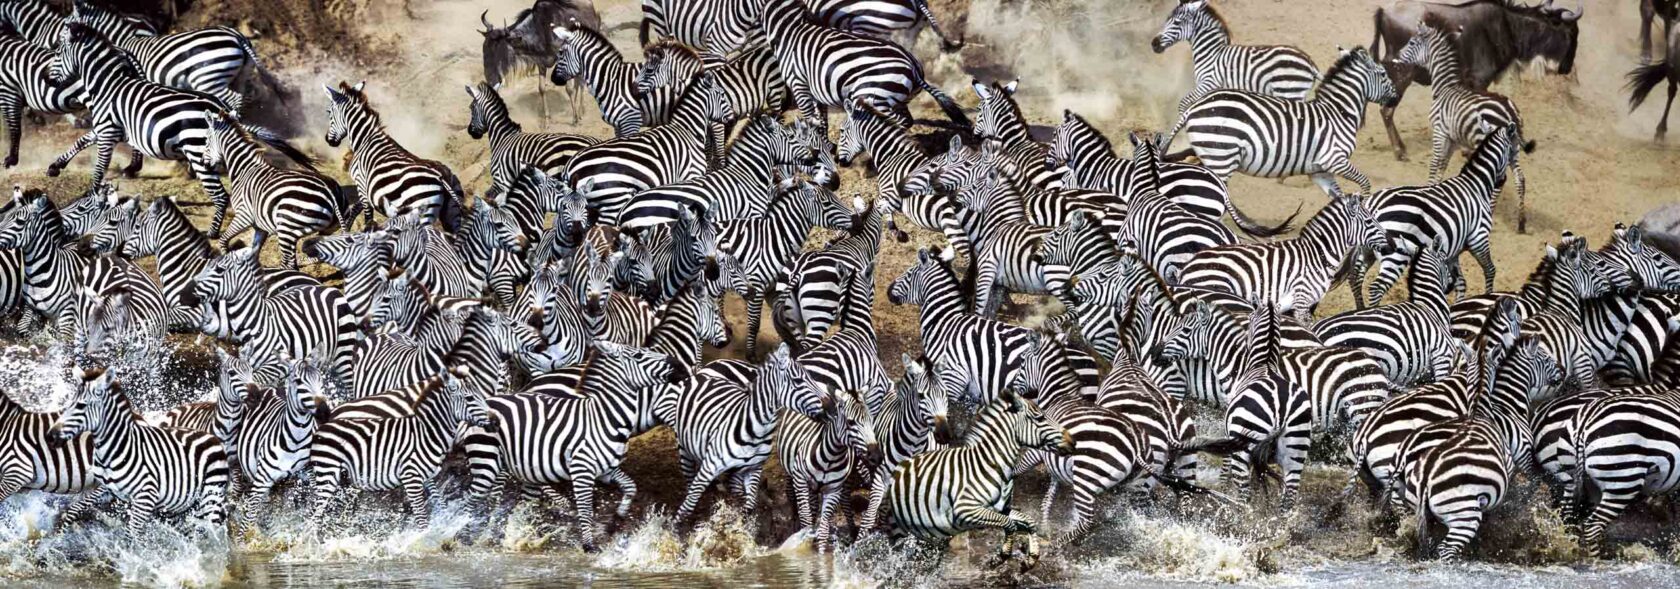 A herd of zebras in Tanzania.